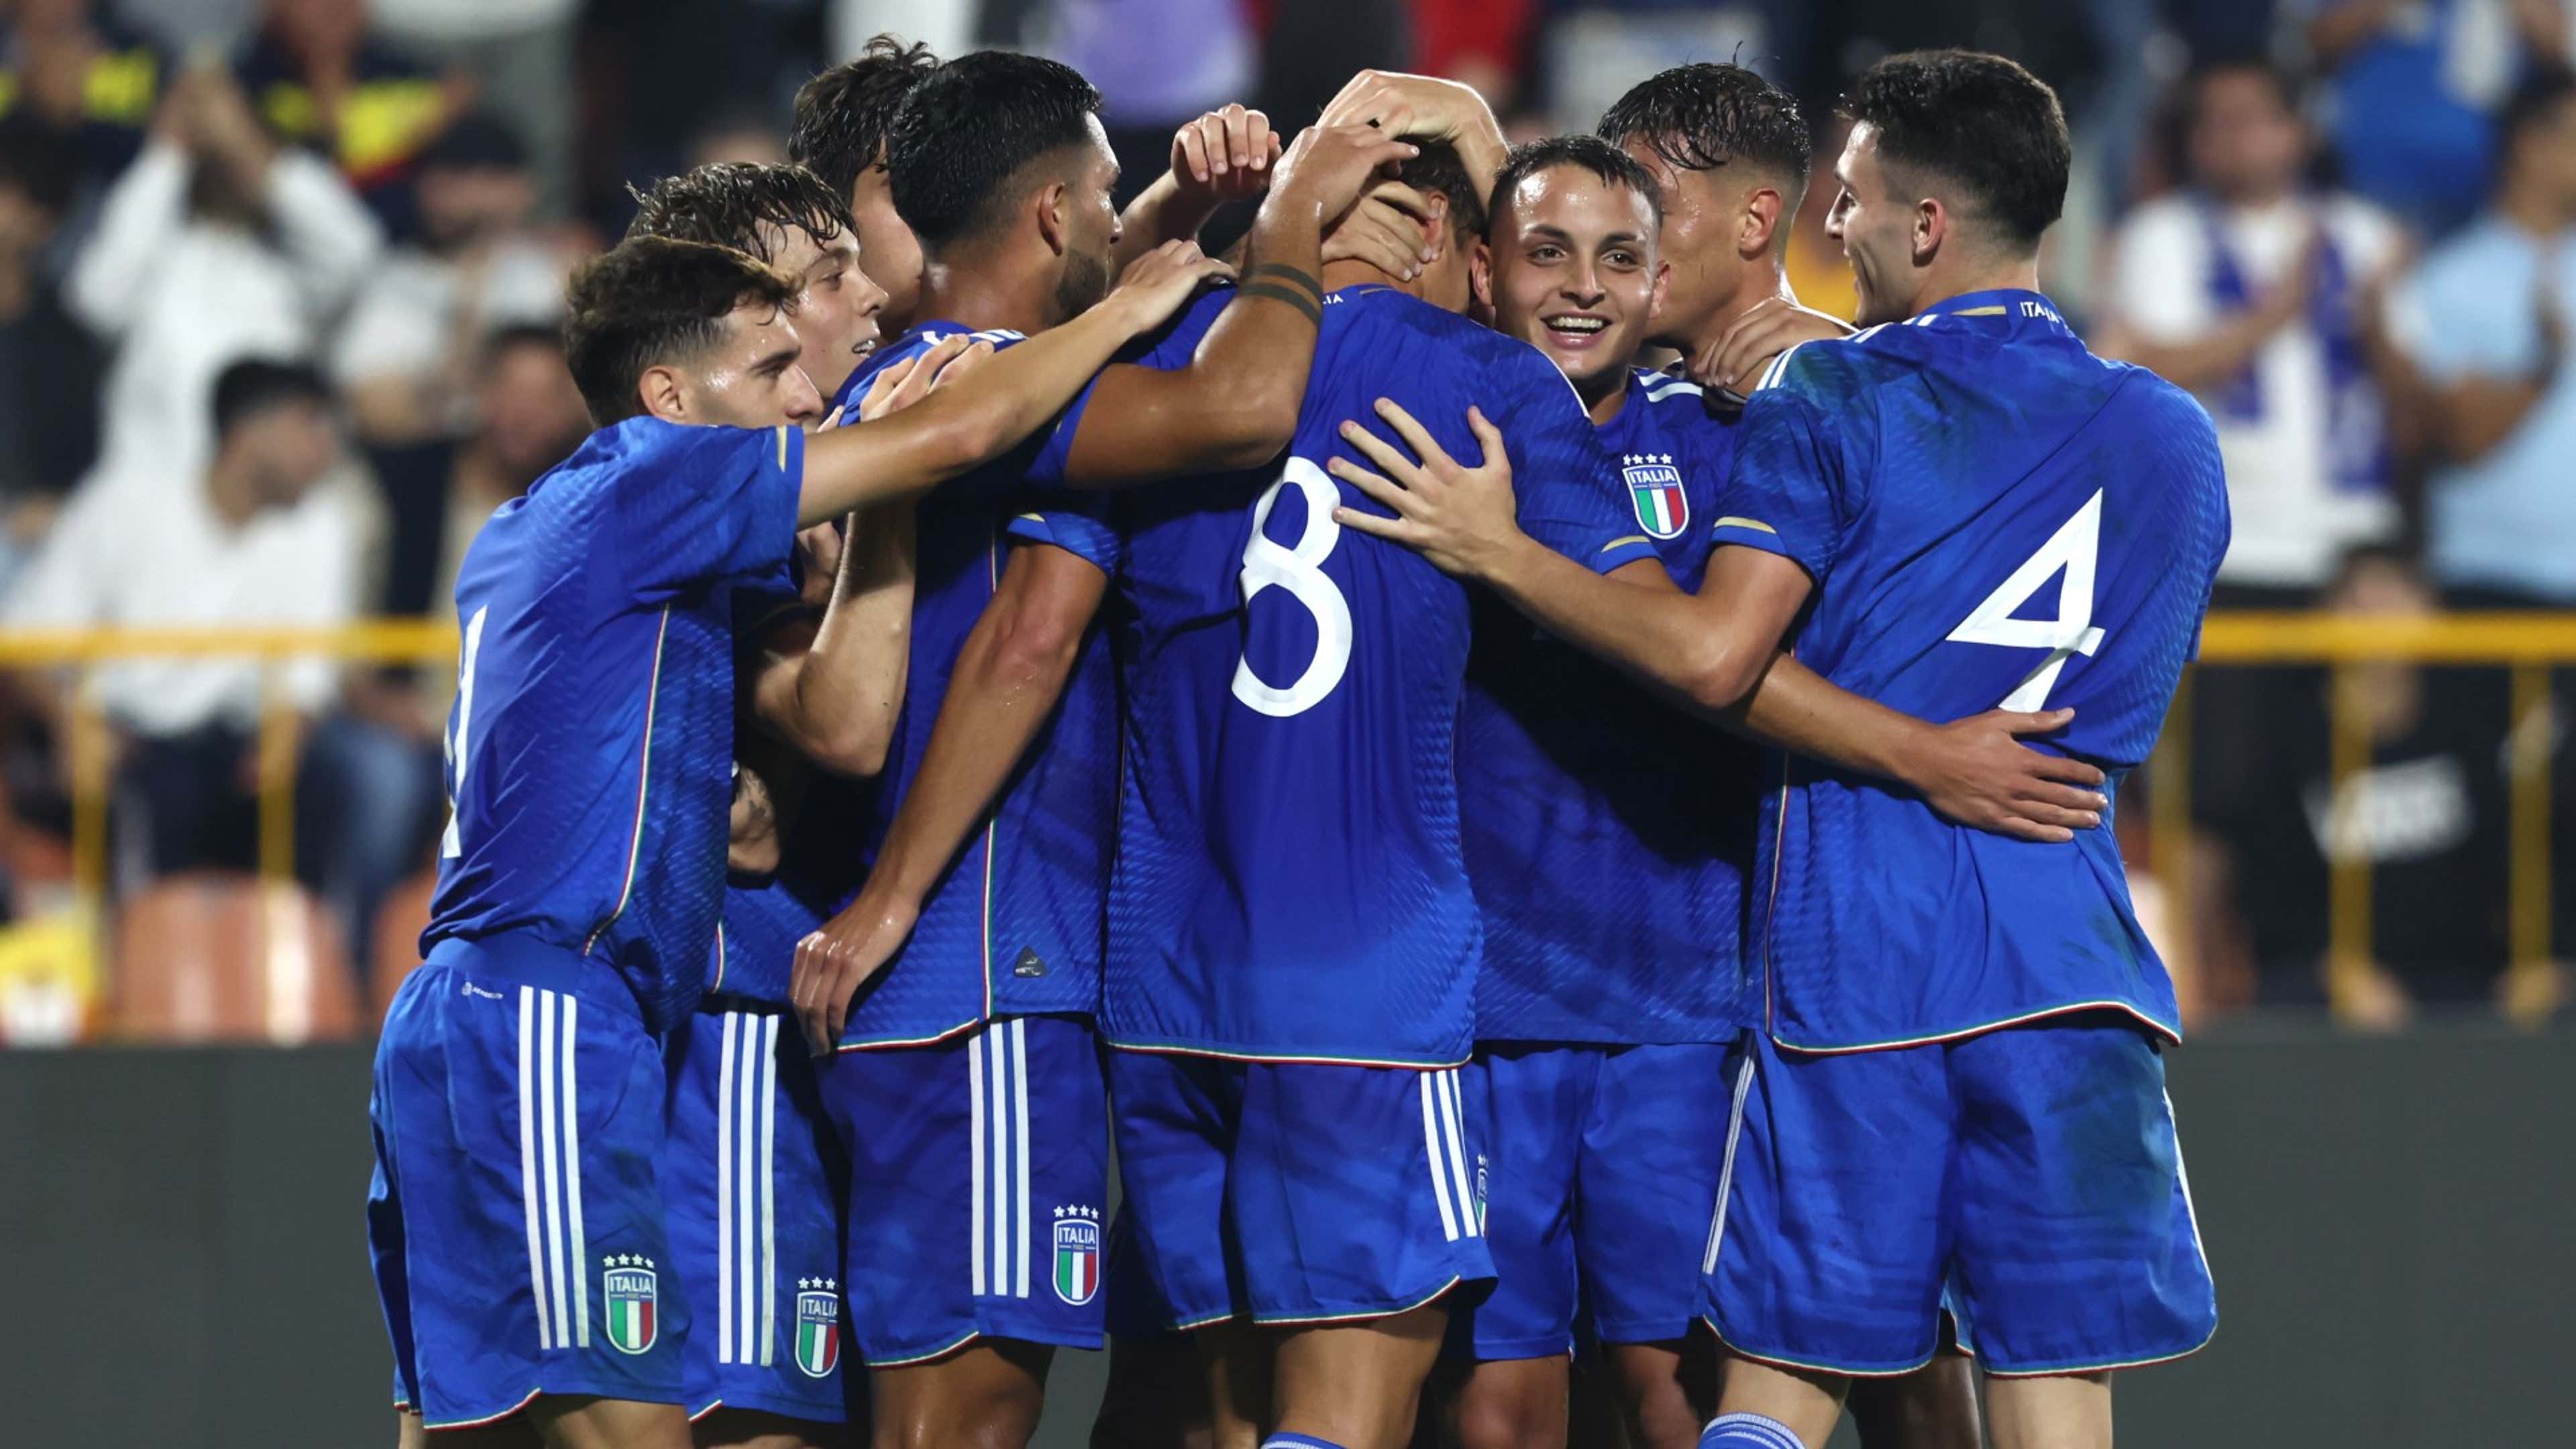 Inghilterra-Italia Under 20 dove vederla: Rai, sito FIGC o Sky? Canale tv,  diretta streaming, formazioni